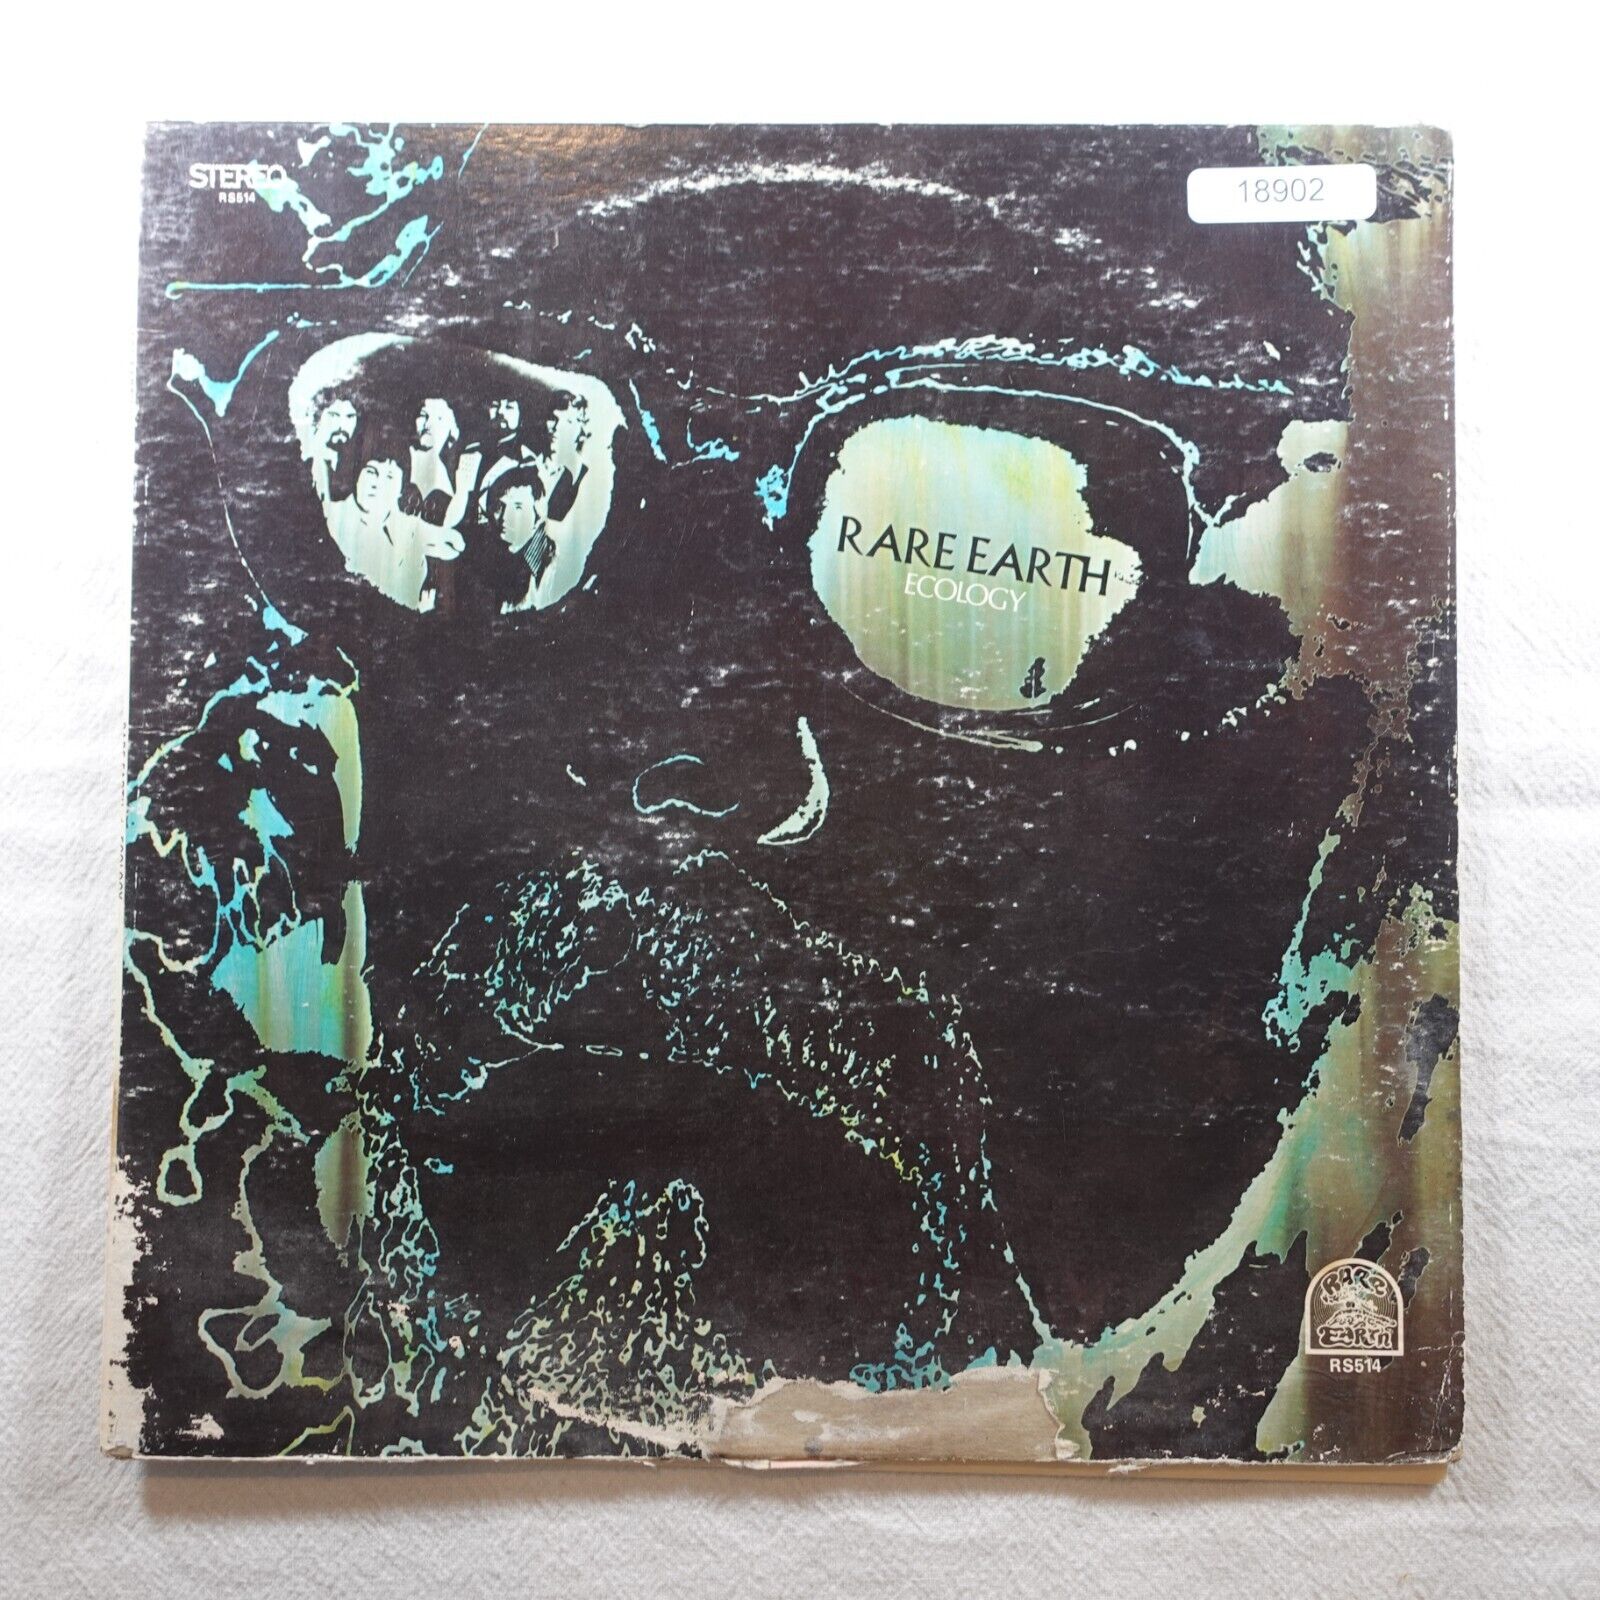 Rare Earth Ecology Rare Earth  Record Album Vinyl LP